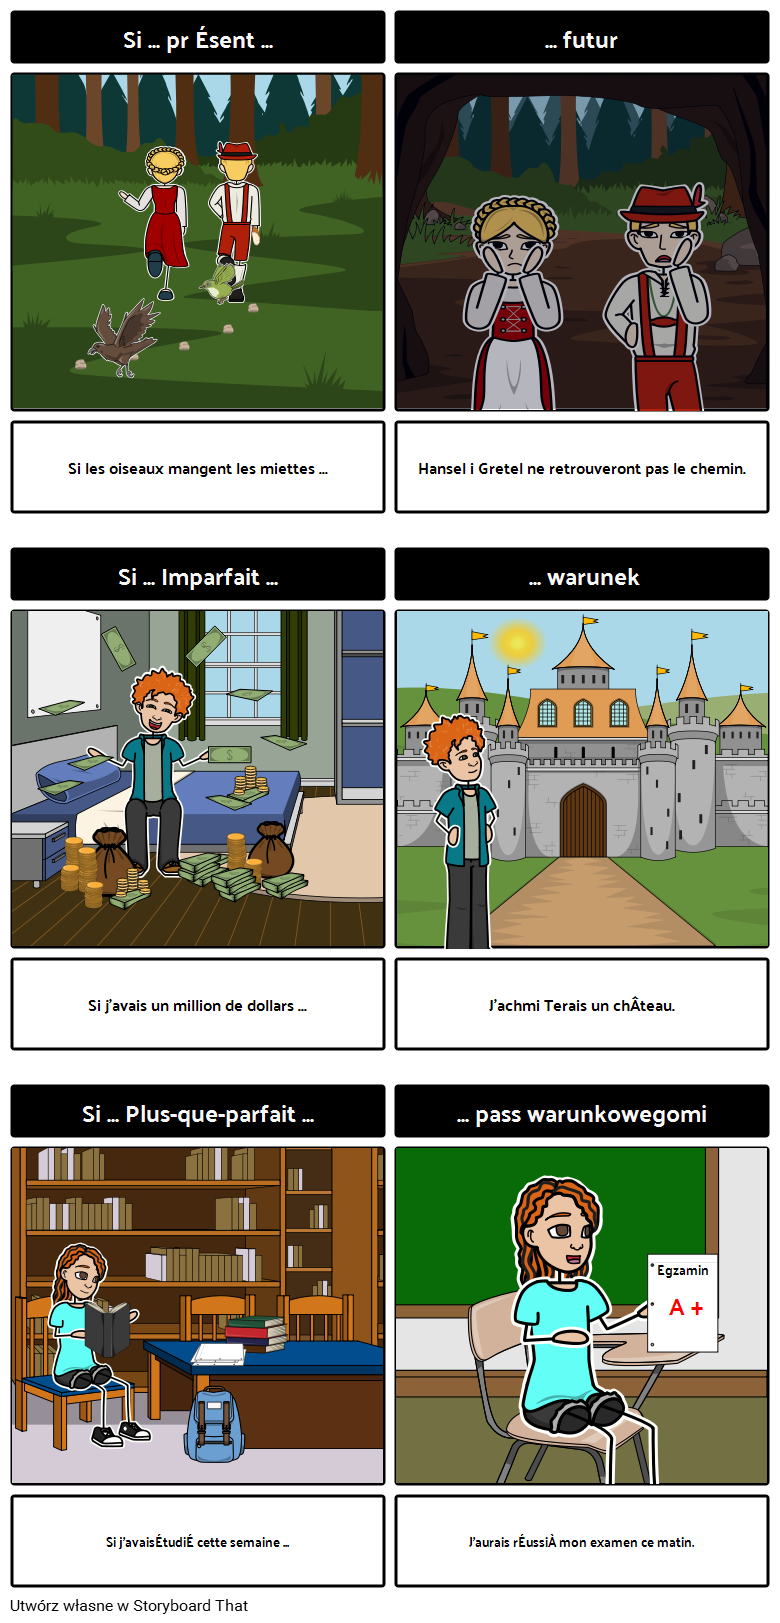 Konstrukcje "Si" w języku francuskim